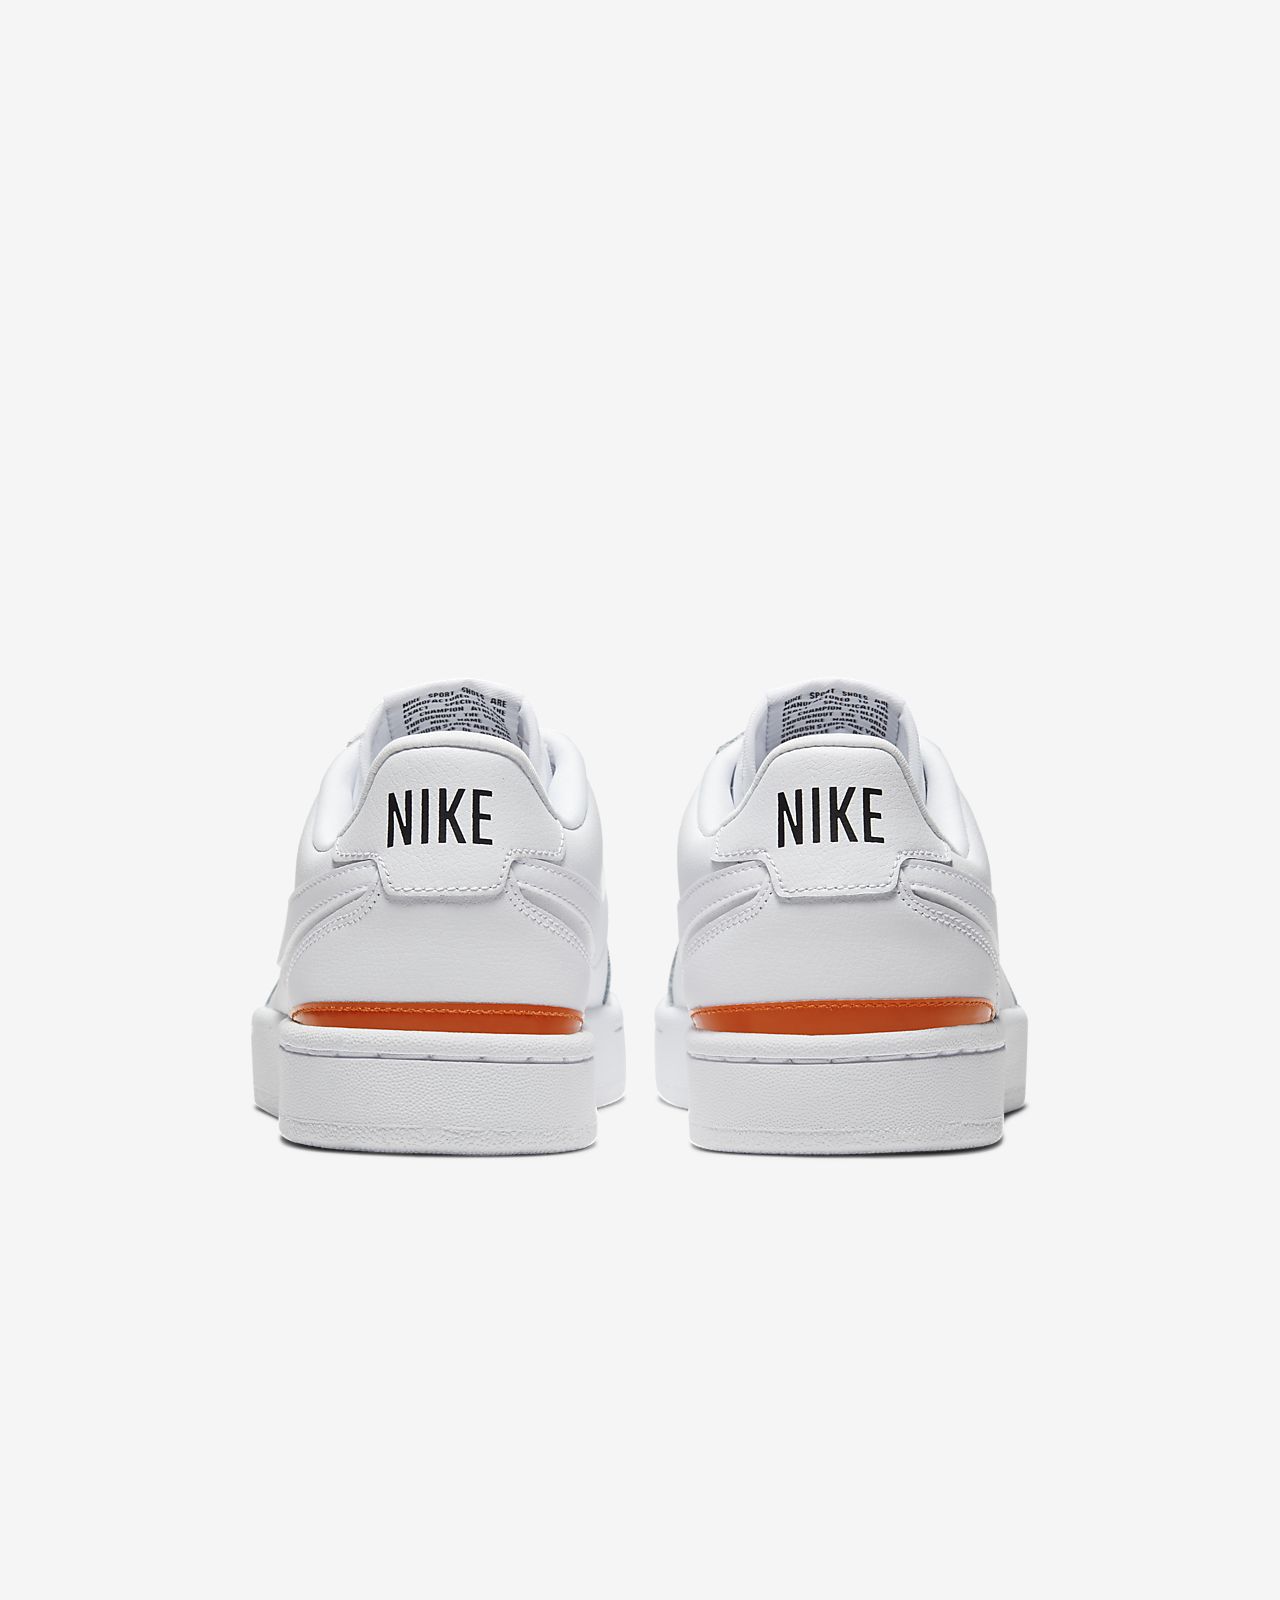 orange and white nike shoes